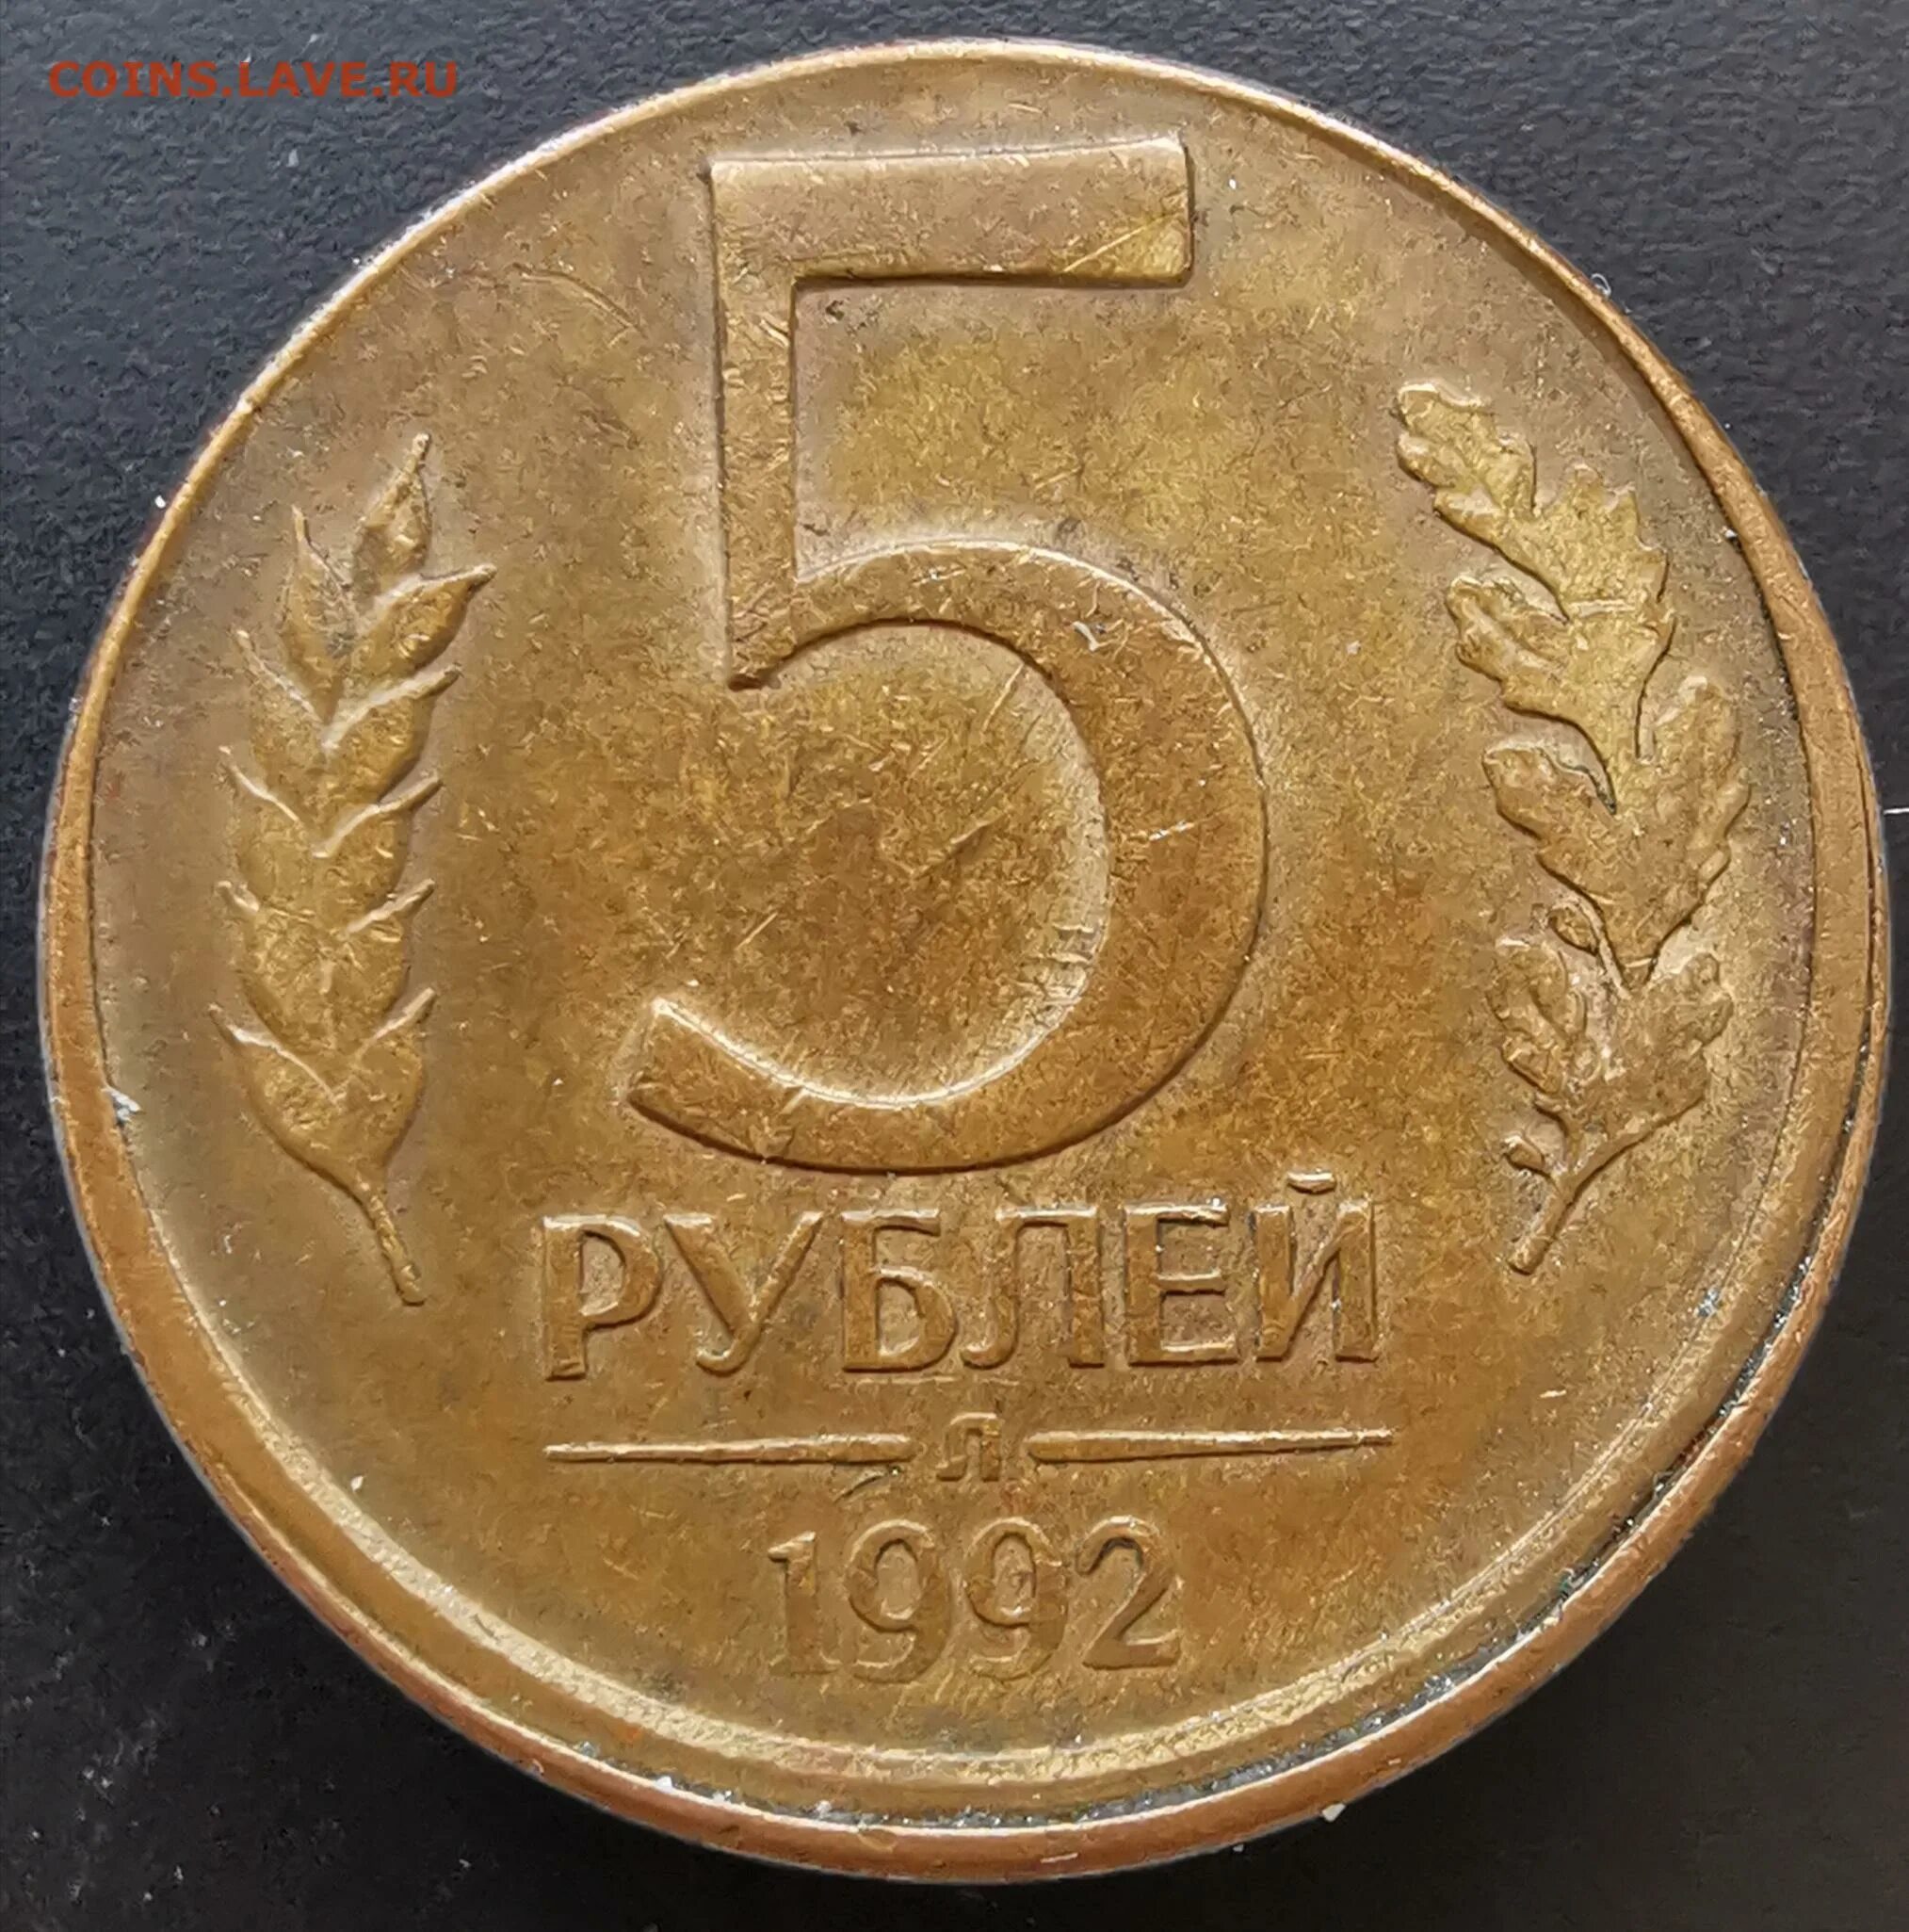 5 Рублей. 5 Рублей 1992 л. Монеты из пятёрки. Монета 5 рублей 1992